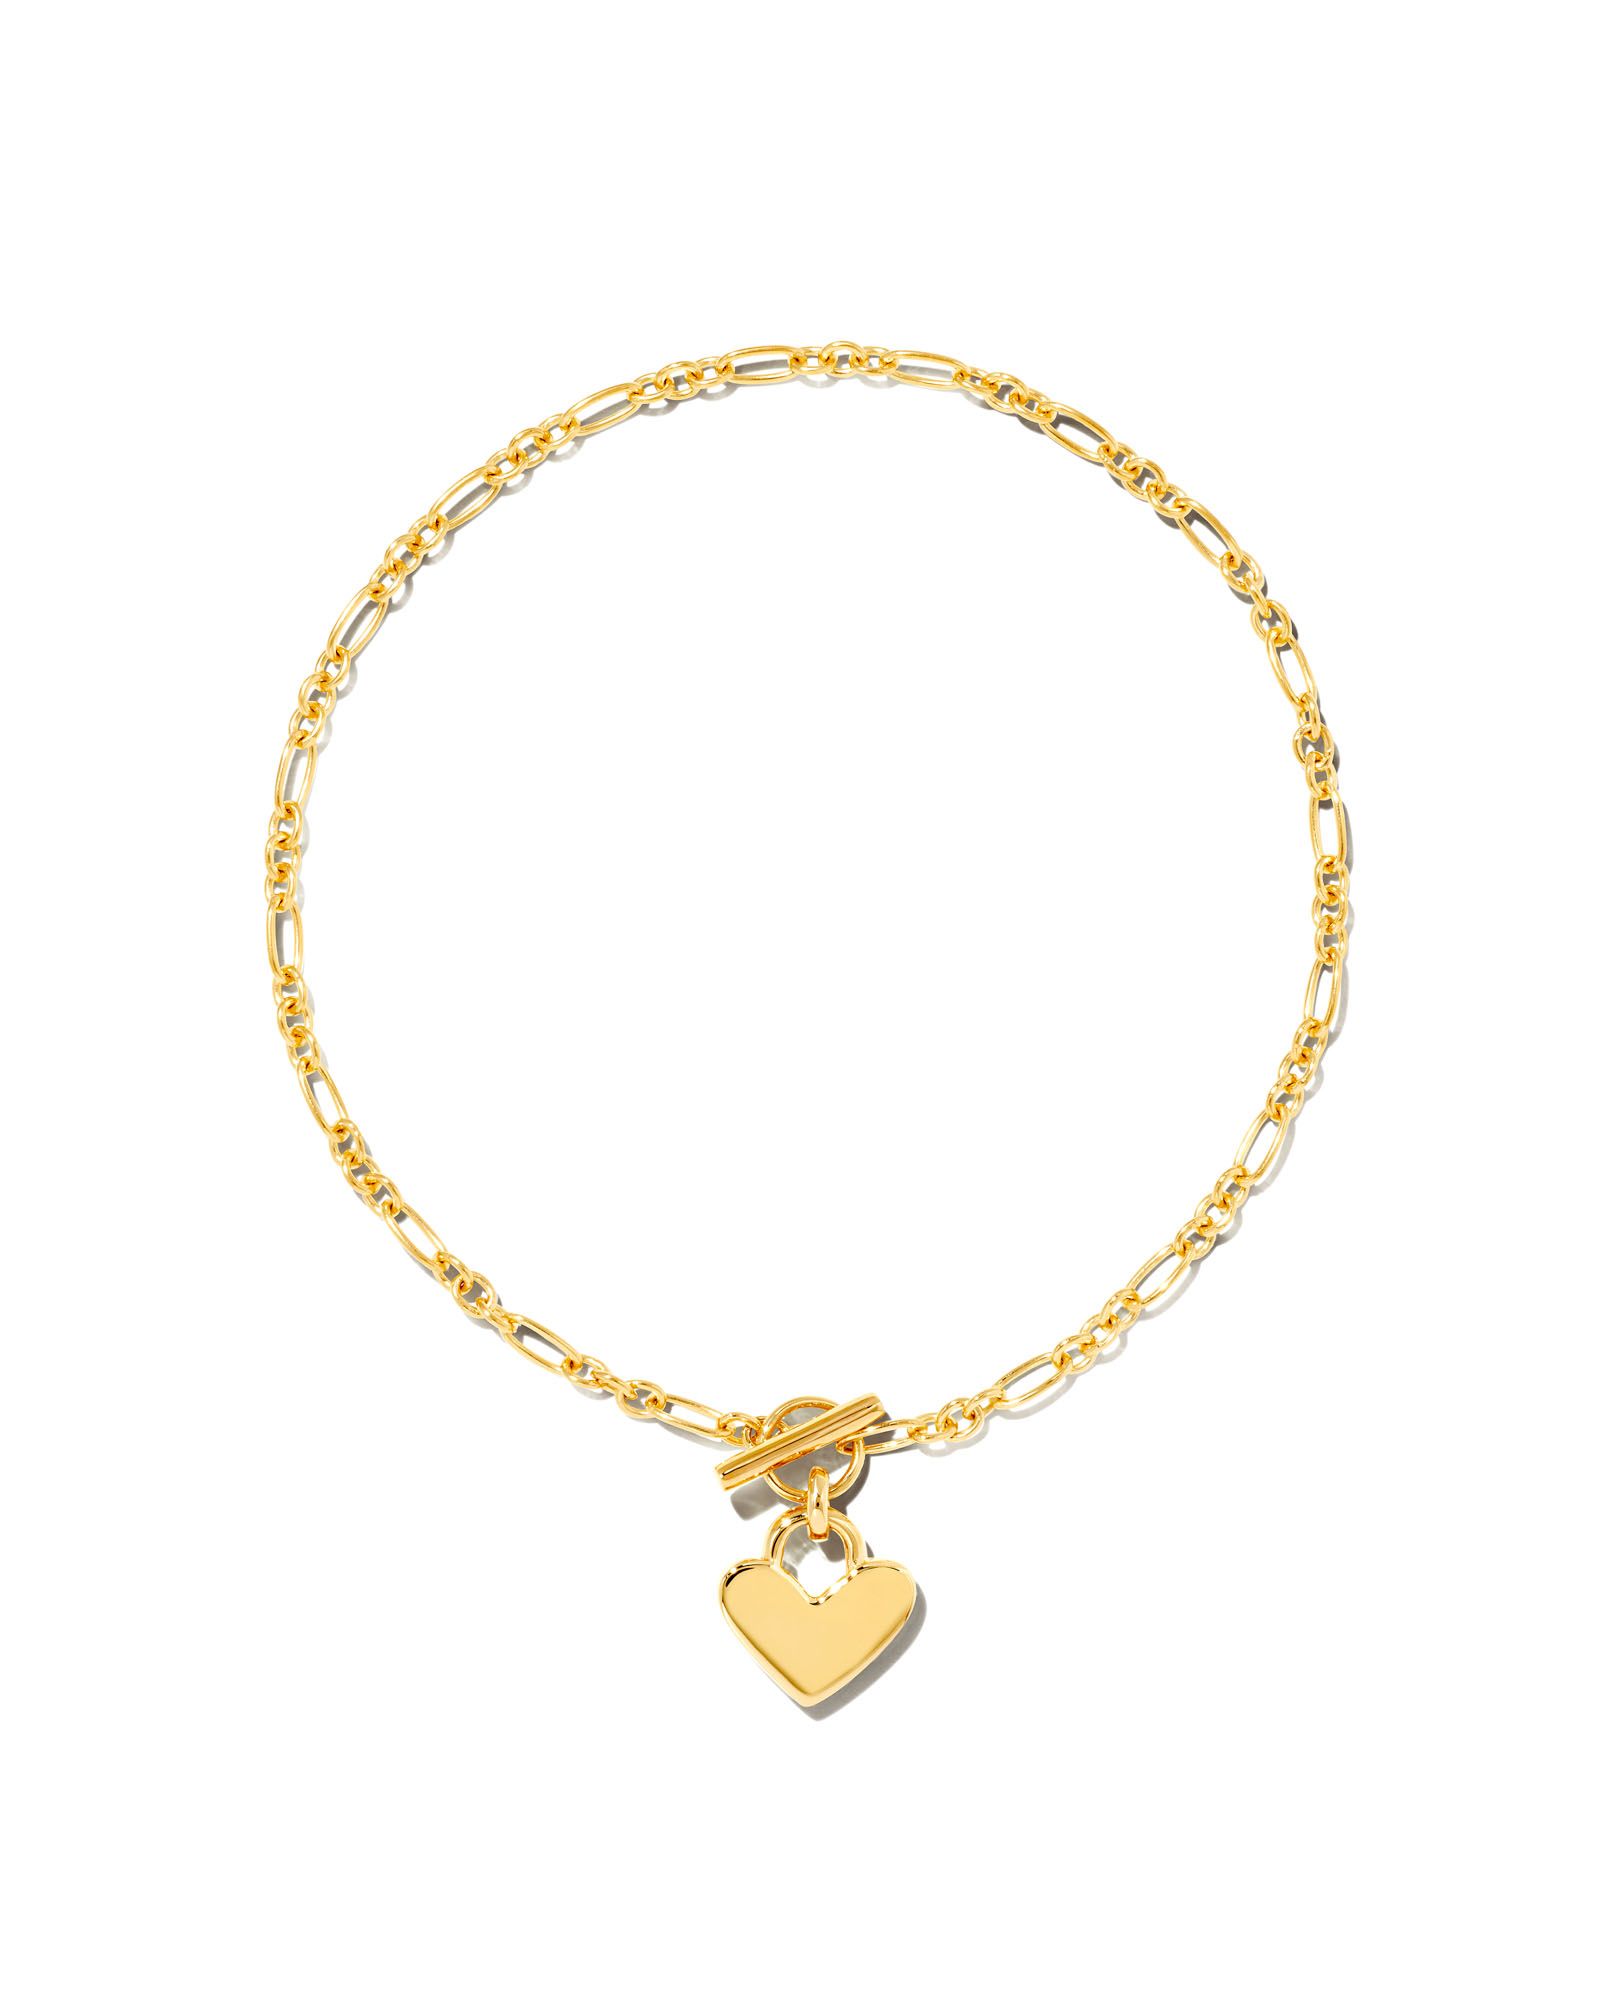 Heart Padlock Chain Bracelet in 18k Gold Vermeil | Kendra Scott | Kendra Scott